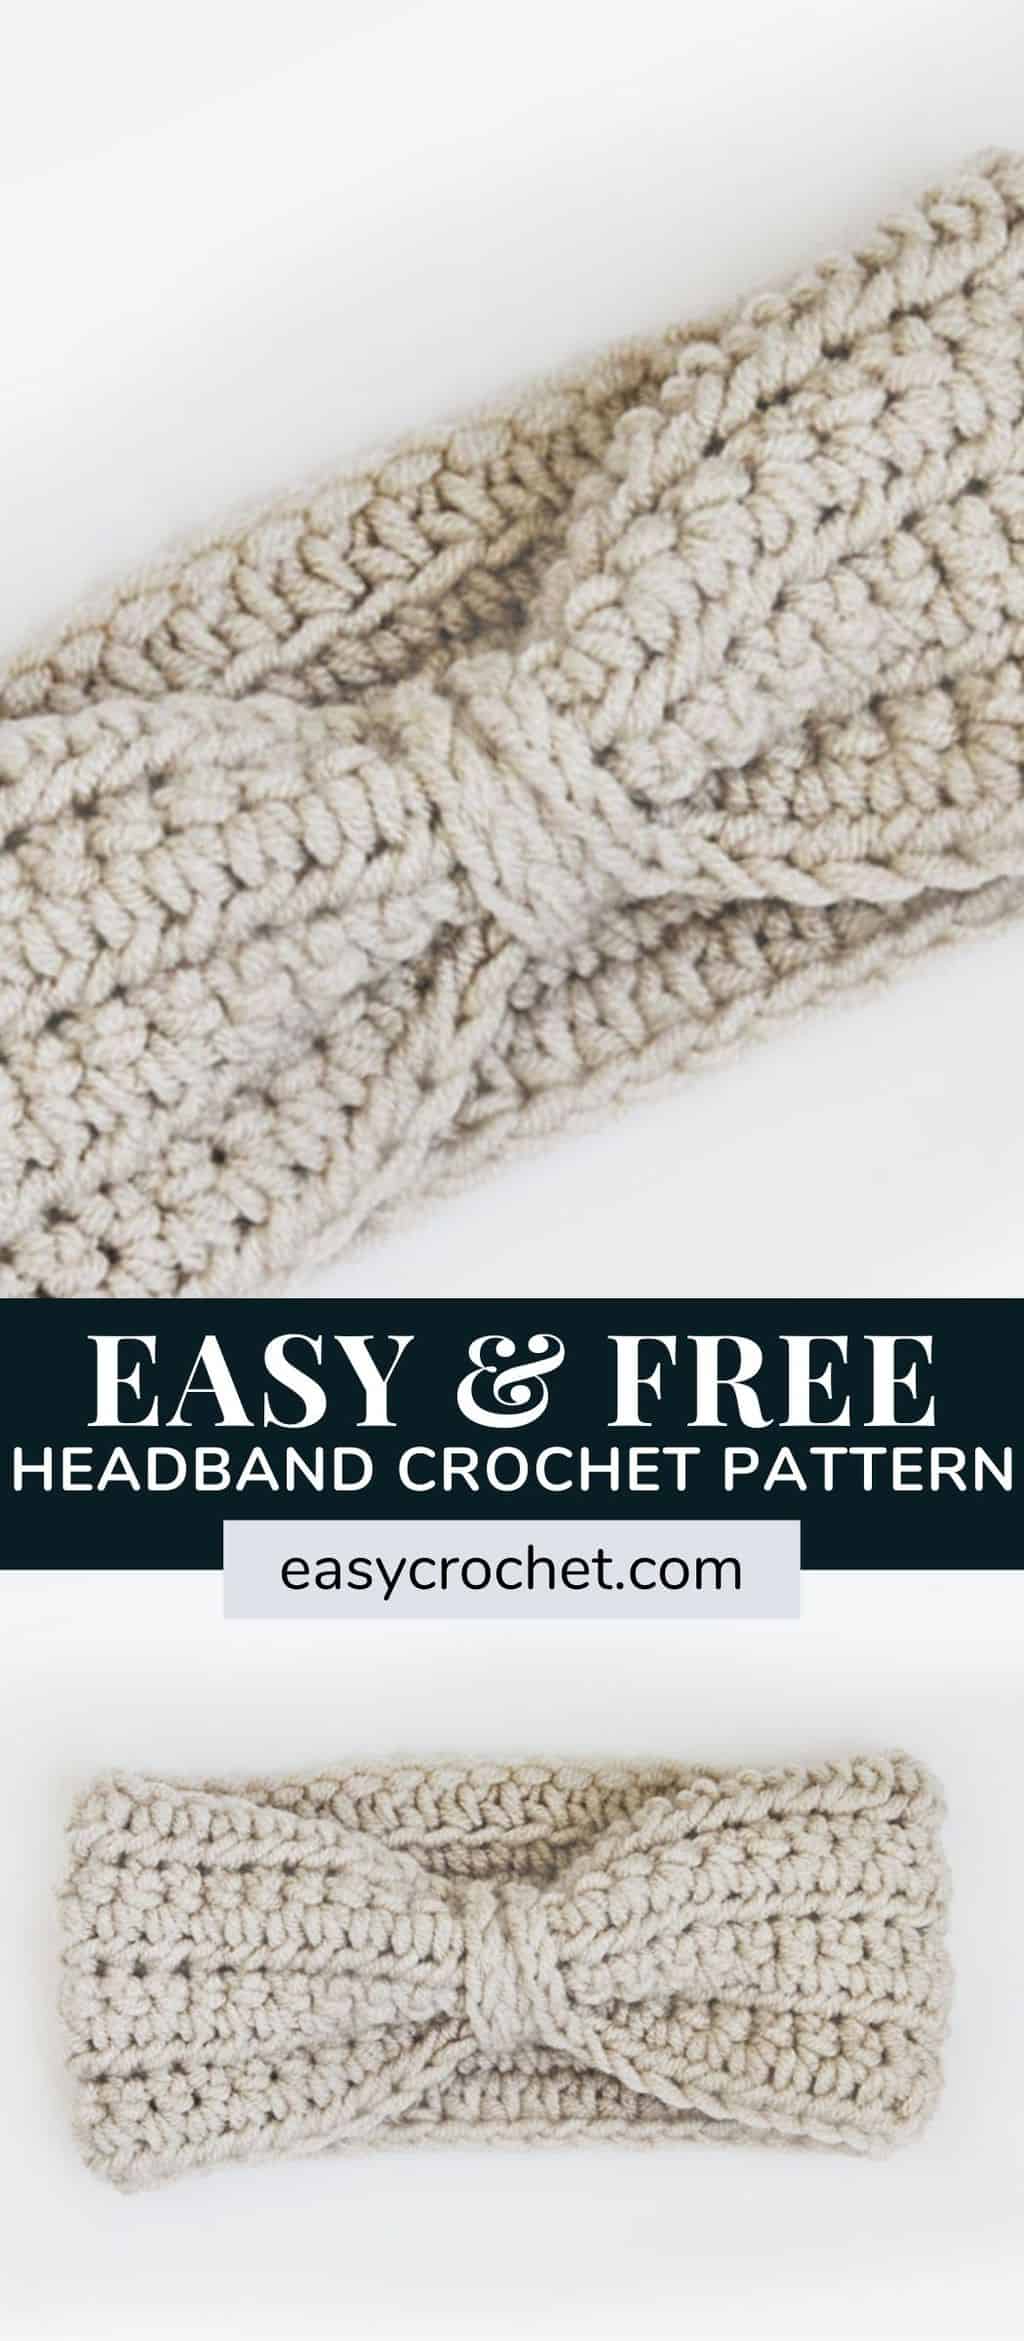 Free crochet ear warmer crochet pattern for an easy to crochet headband. Find this free crochet pattern at easycrochet.com via @easycrochetcom